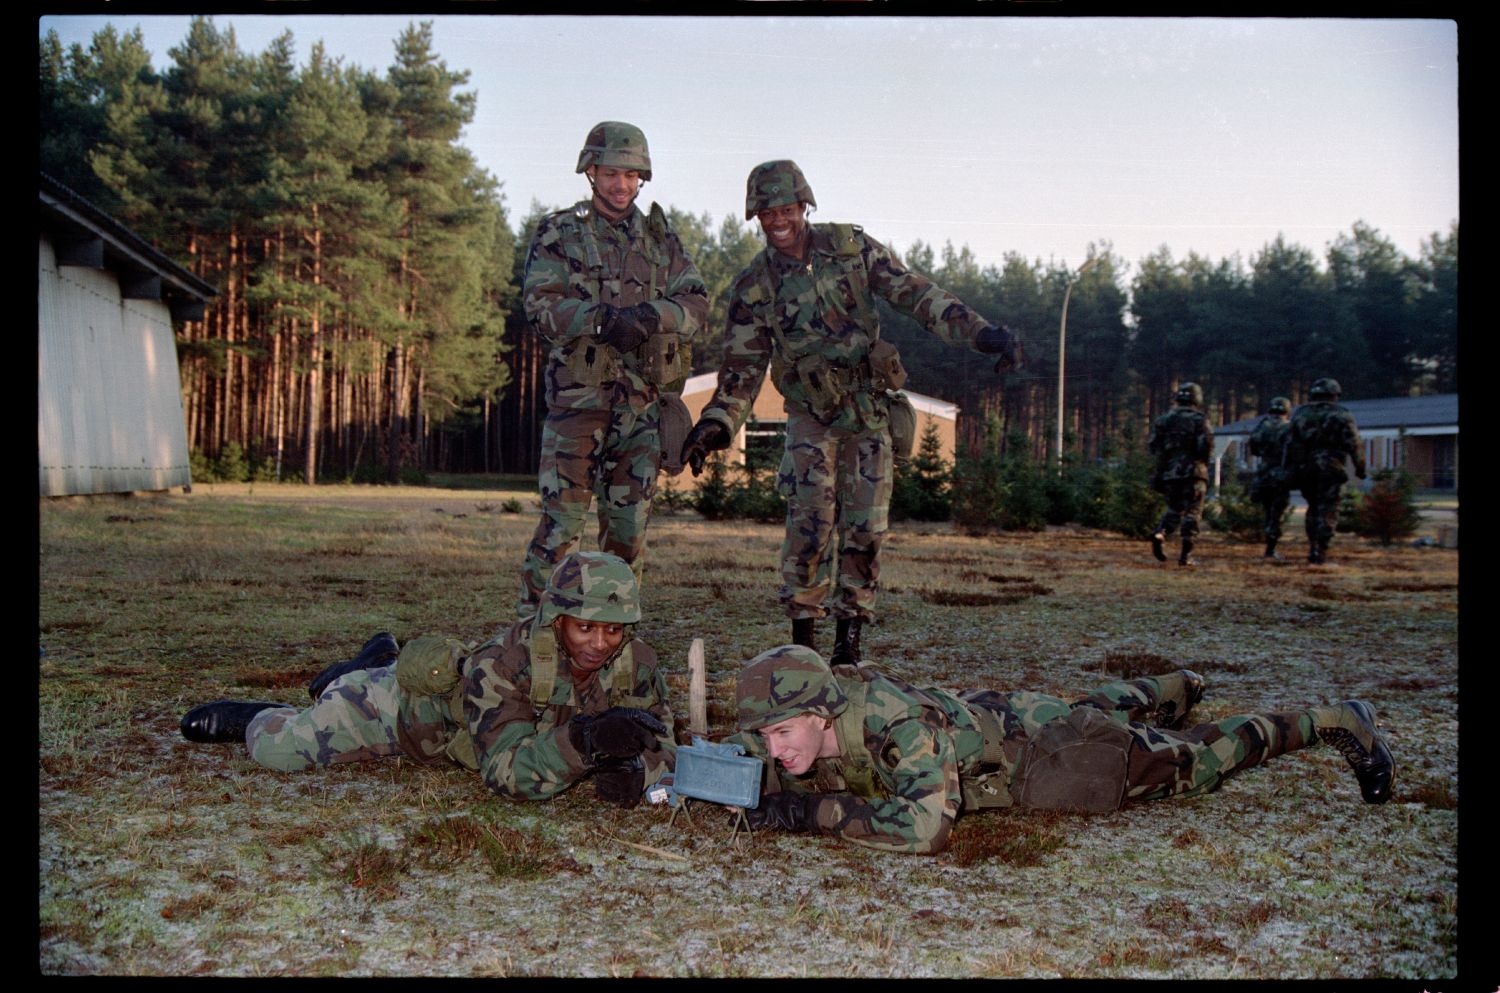 Fotografie: Trainingsübung der U.S. Army Berlin Brigade auf dem Truppenübungsplatz Ehra-Lessien in Niedersachsen